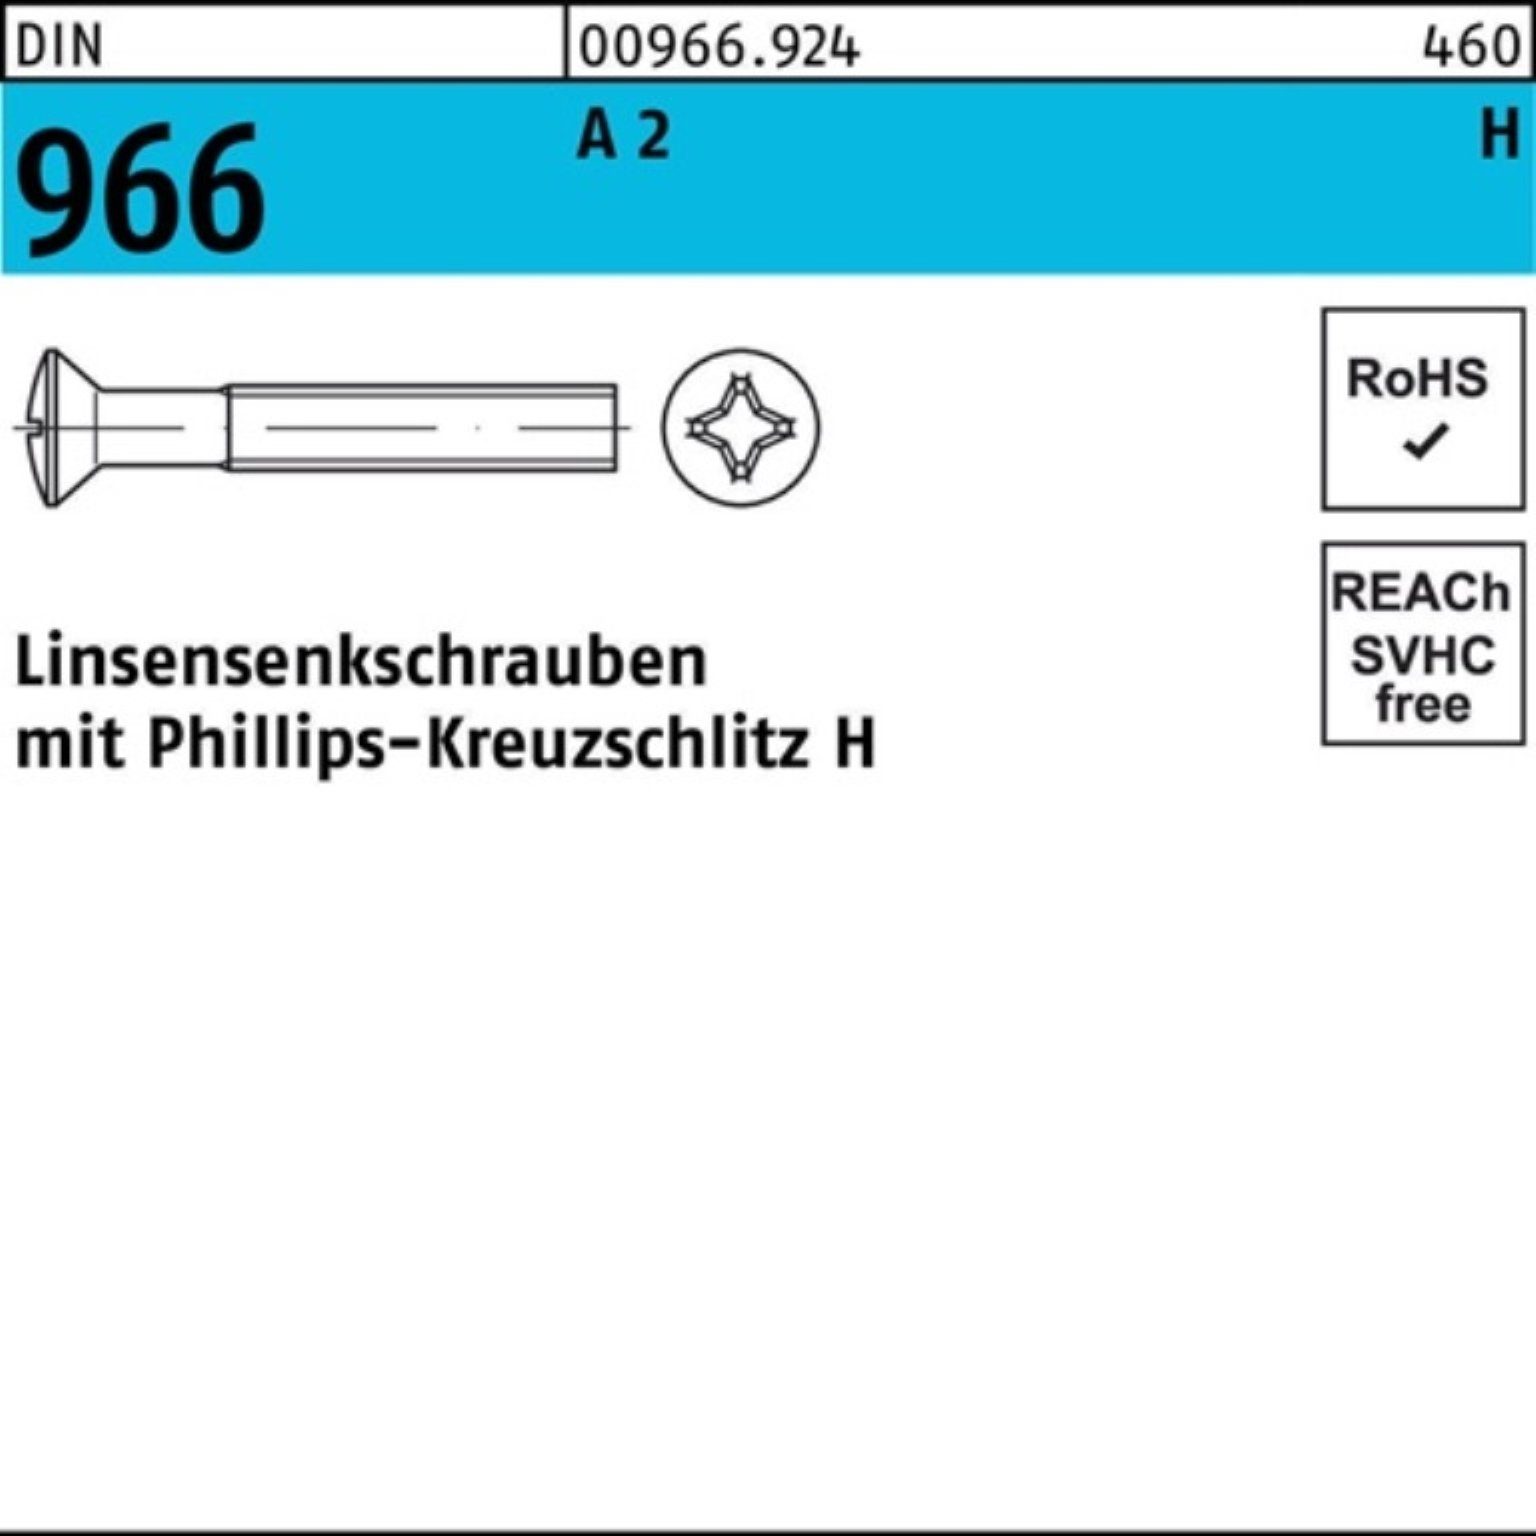 A Reyher PH DIN 200 200er M6x Linsenschraube 40-H Linsensenkschraube 966 2 Kreuzschlitz Pack